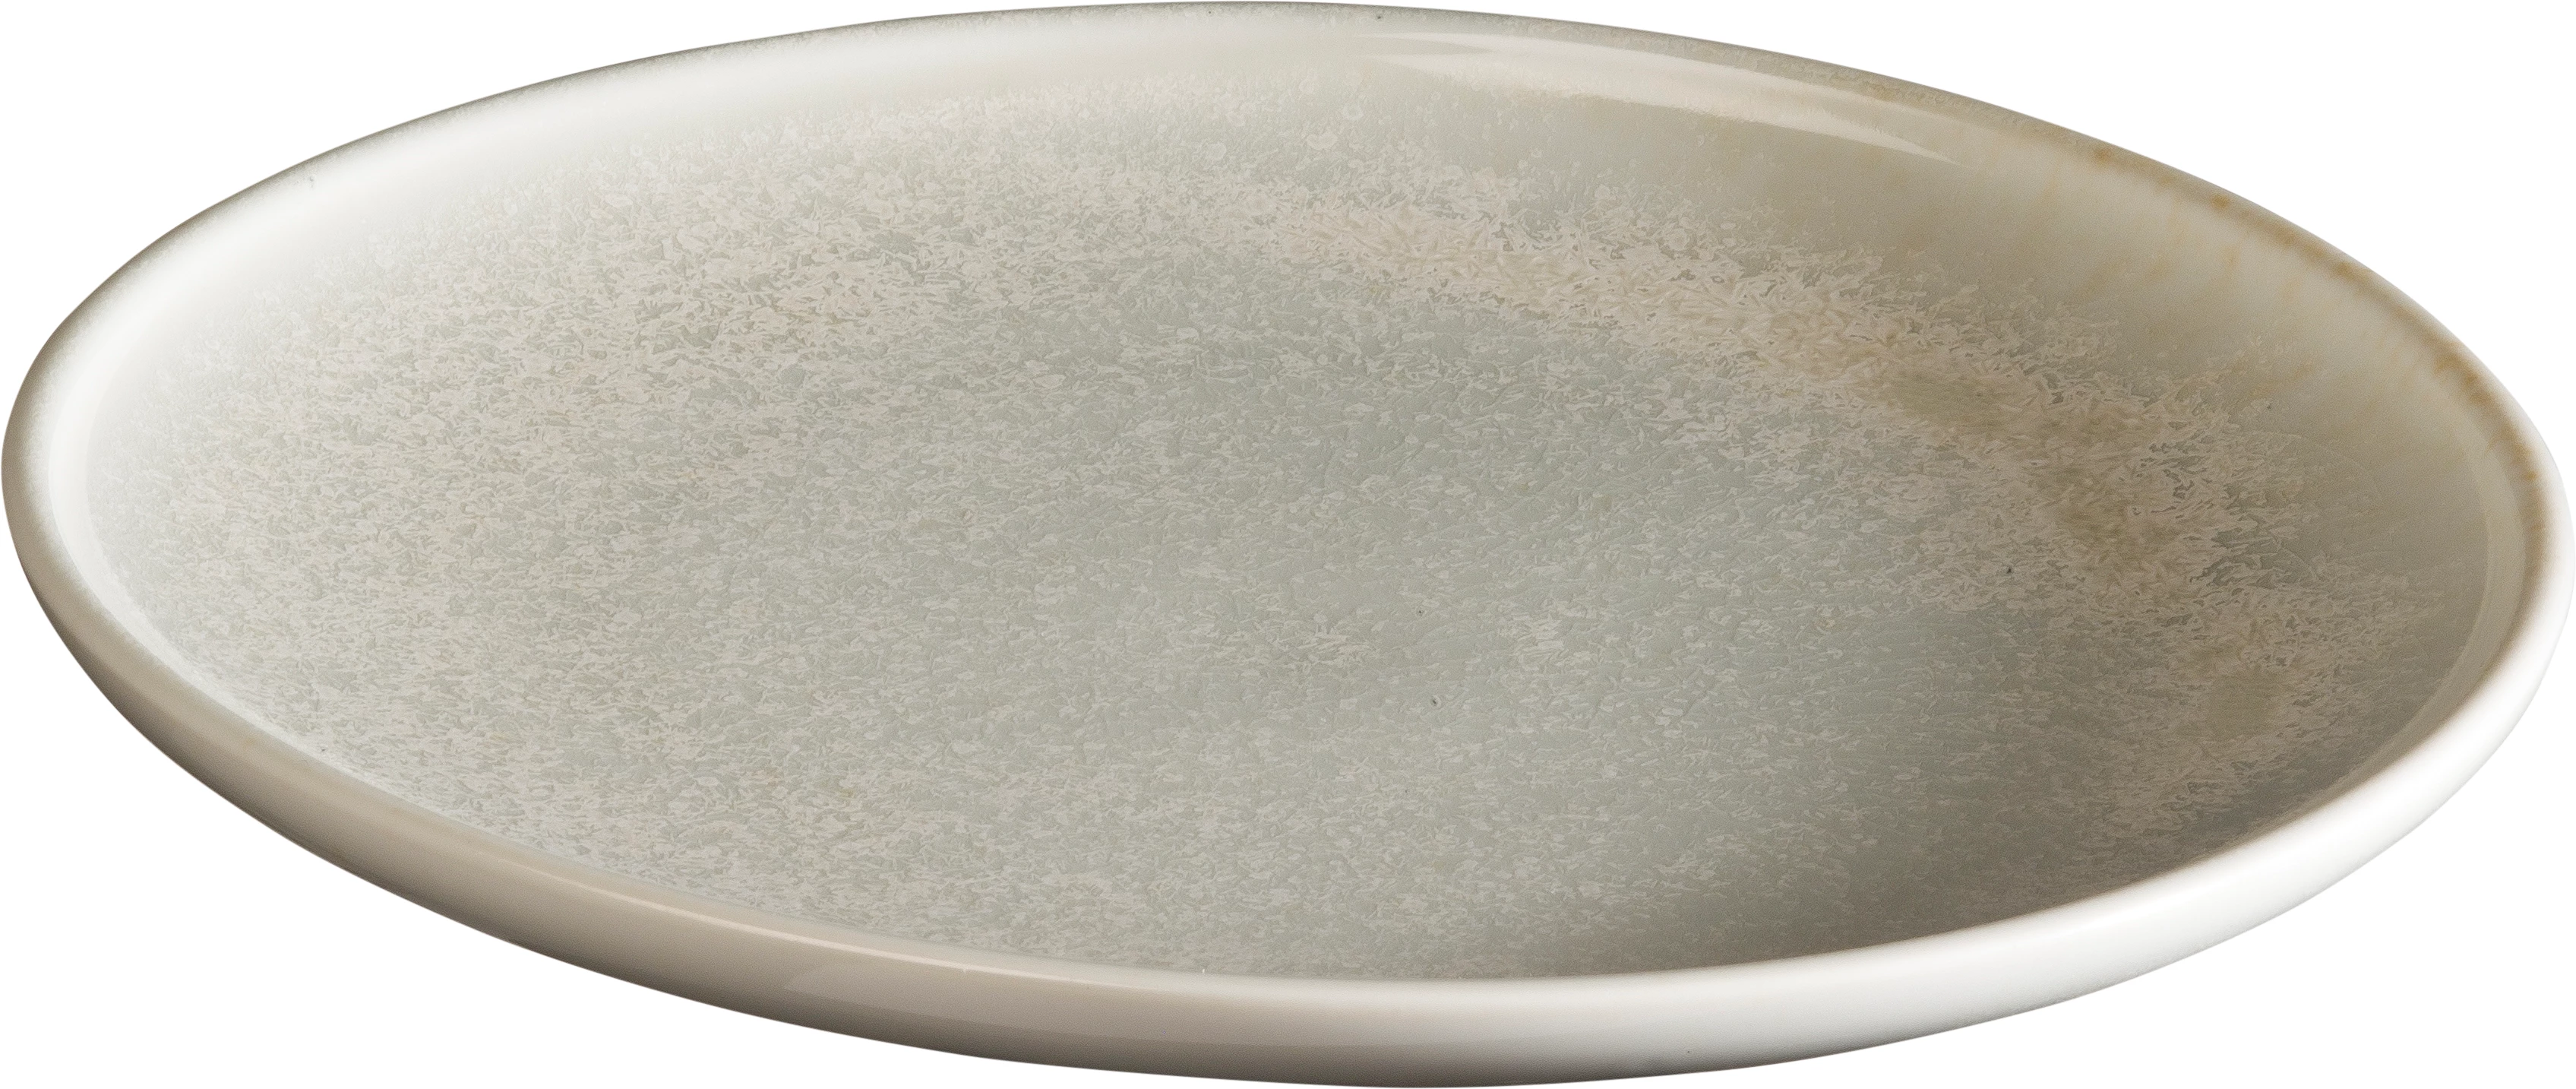 Qmulus flad tallerken uden fane, grå, ø22,5 cm